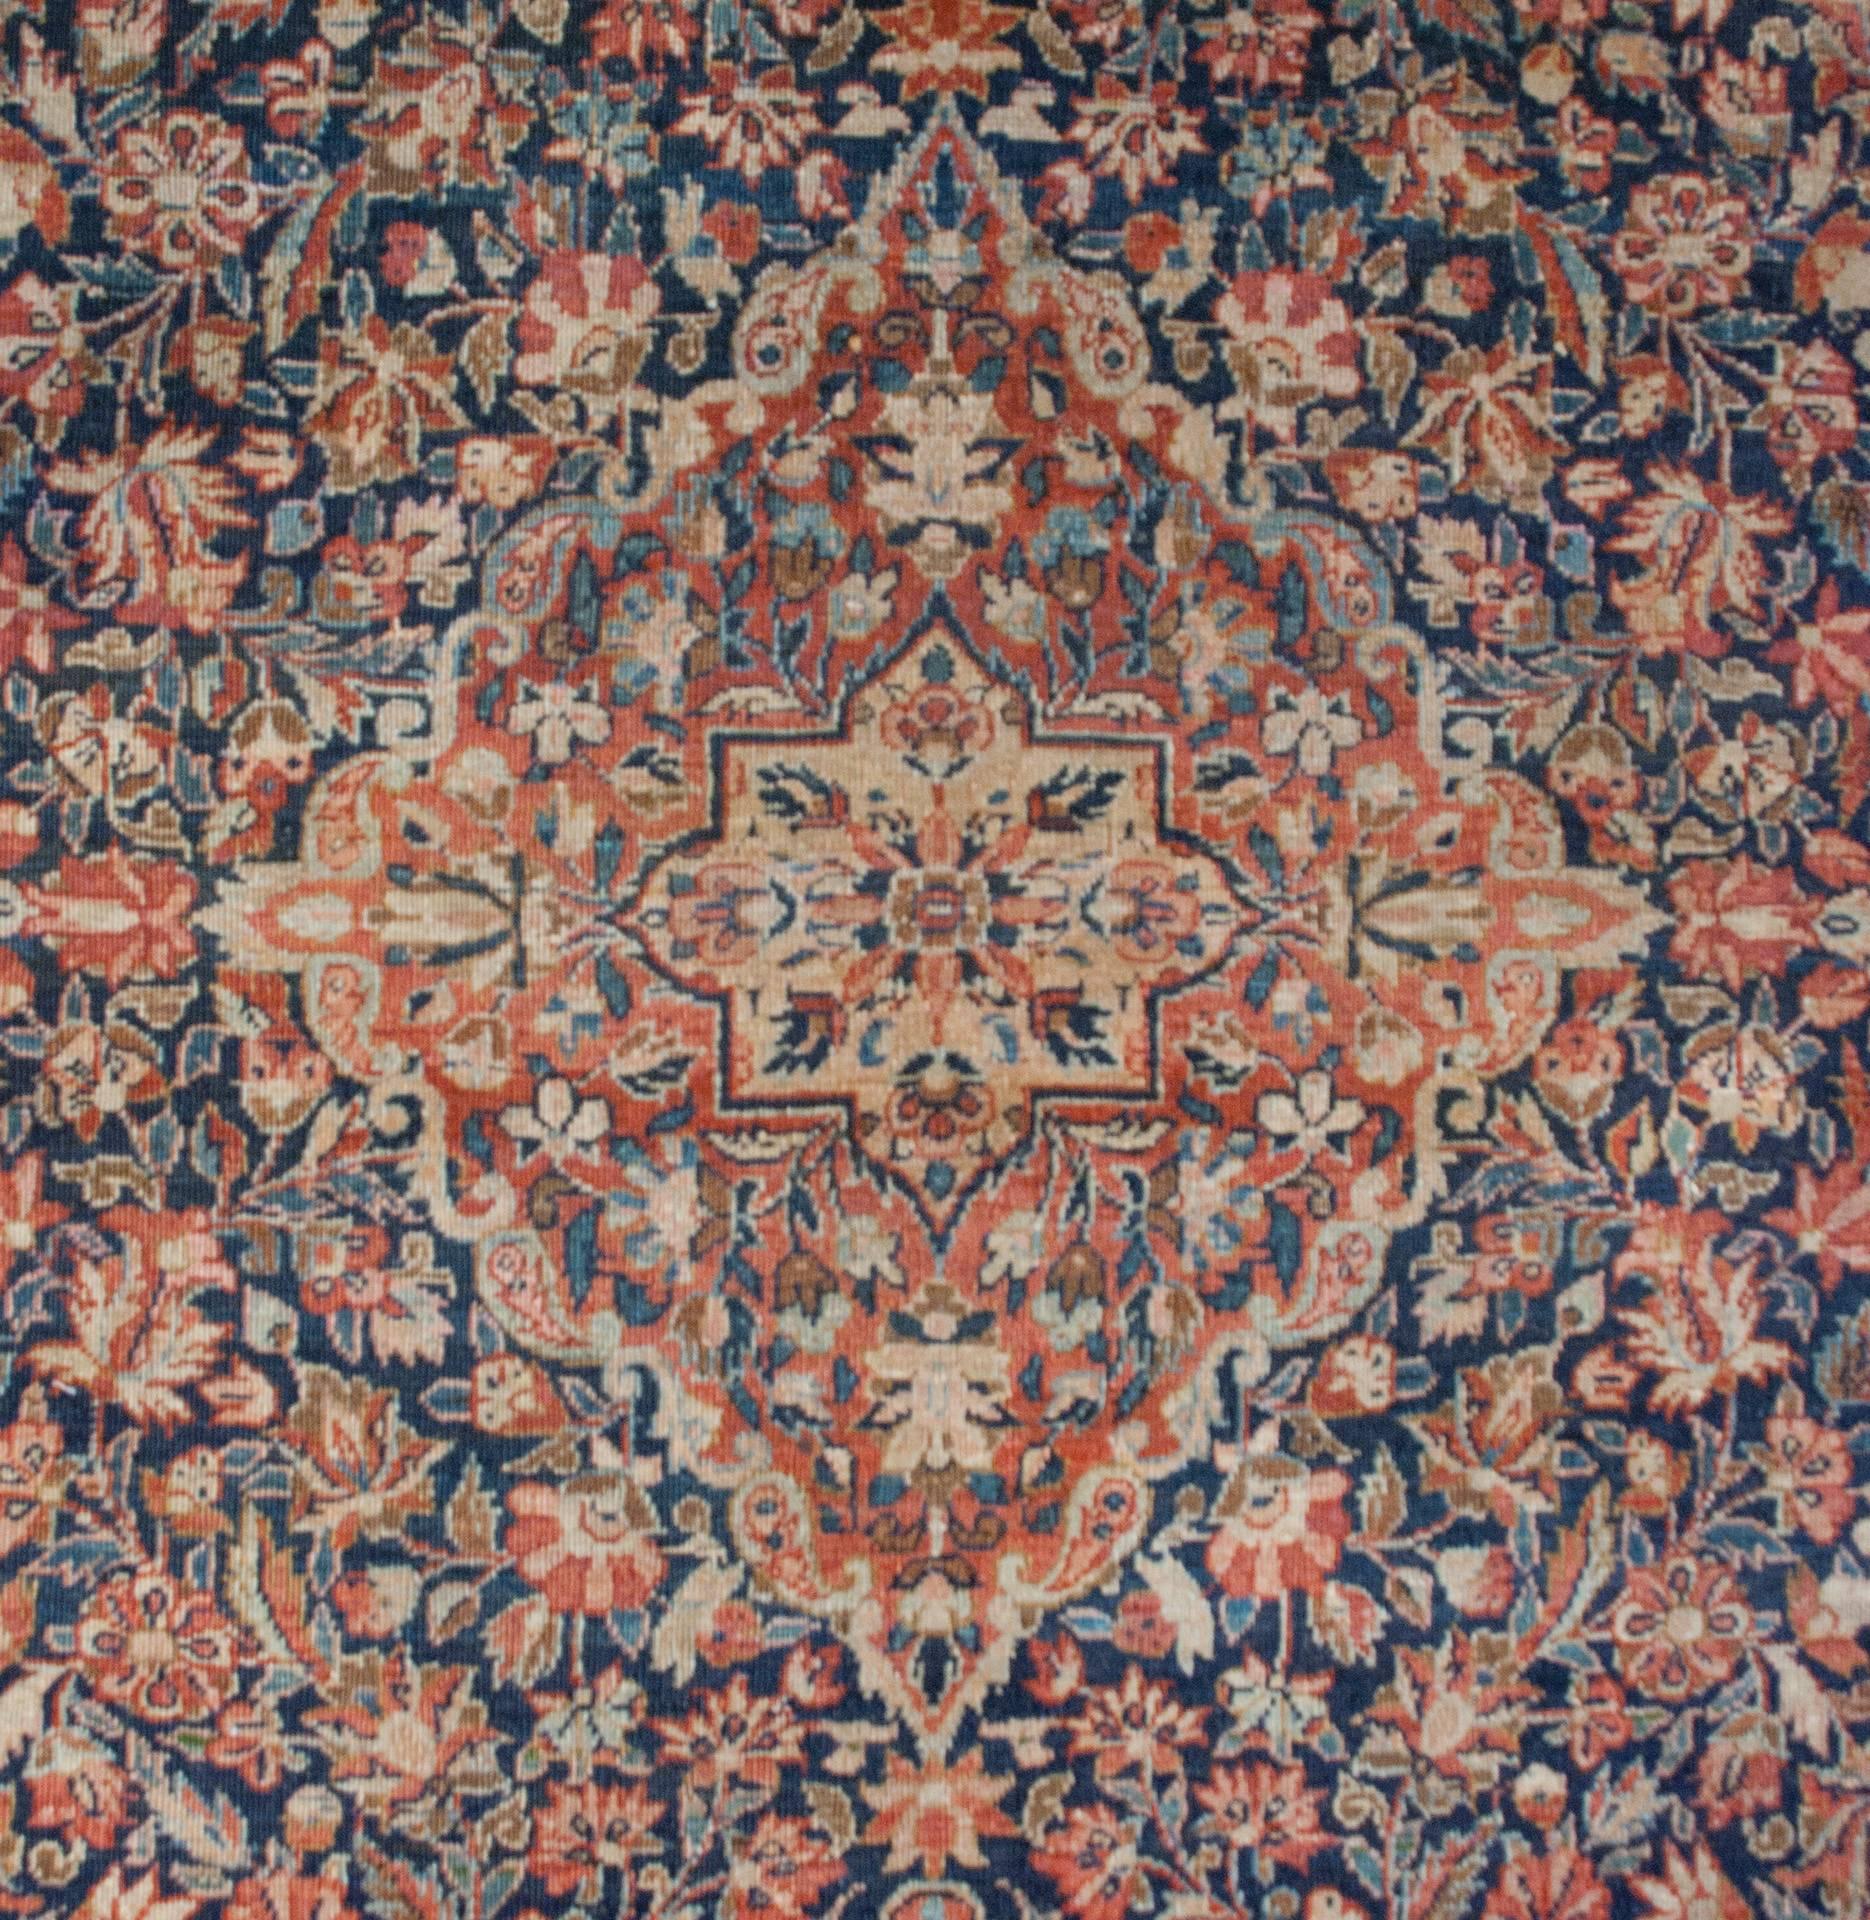 Ein erstaunlicher persischer Täbriz-Teppich aus dem späten 19. Jahrhundert mit einem intensiv gewebten, mehrfarbigen Blumenmuster in Purpur, Indigo, Türkis und natürlicher, ungefärbter Wolle mit einem großen zentralen rautenförmigen Medaillon